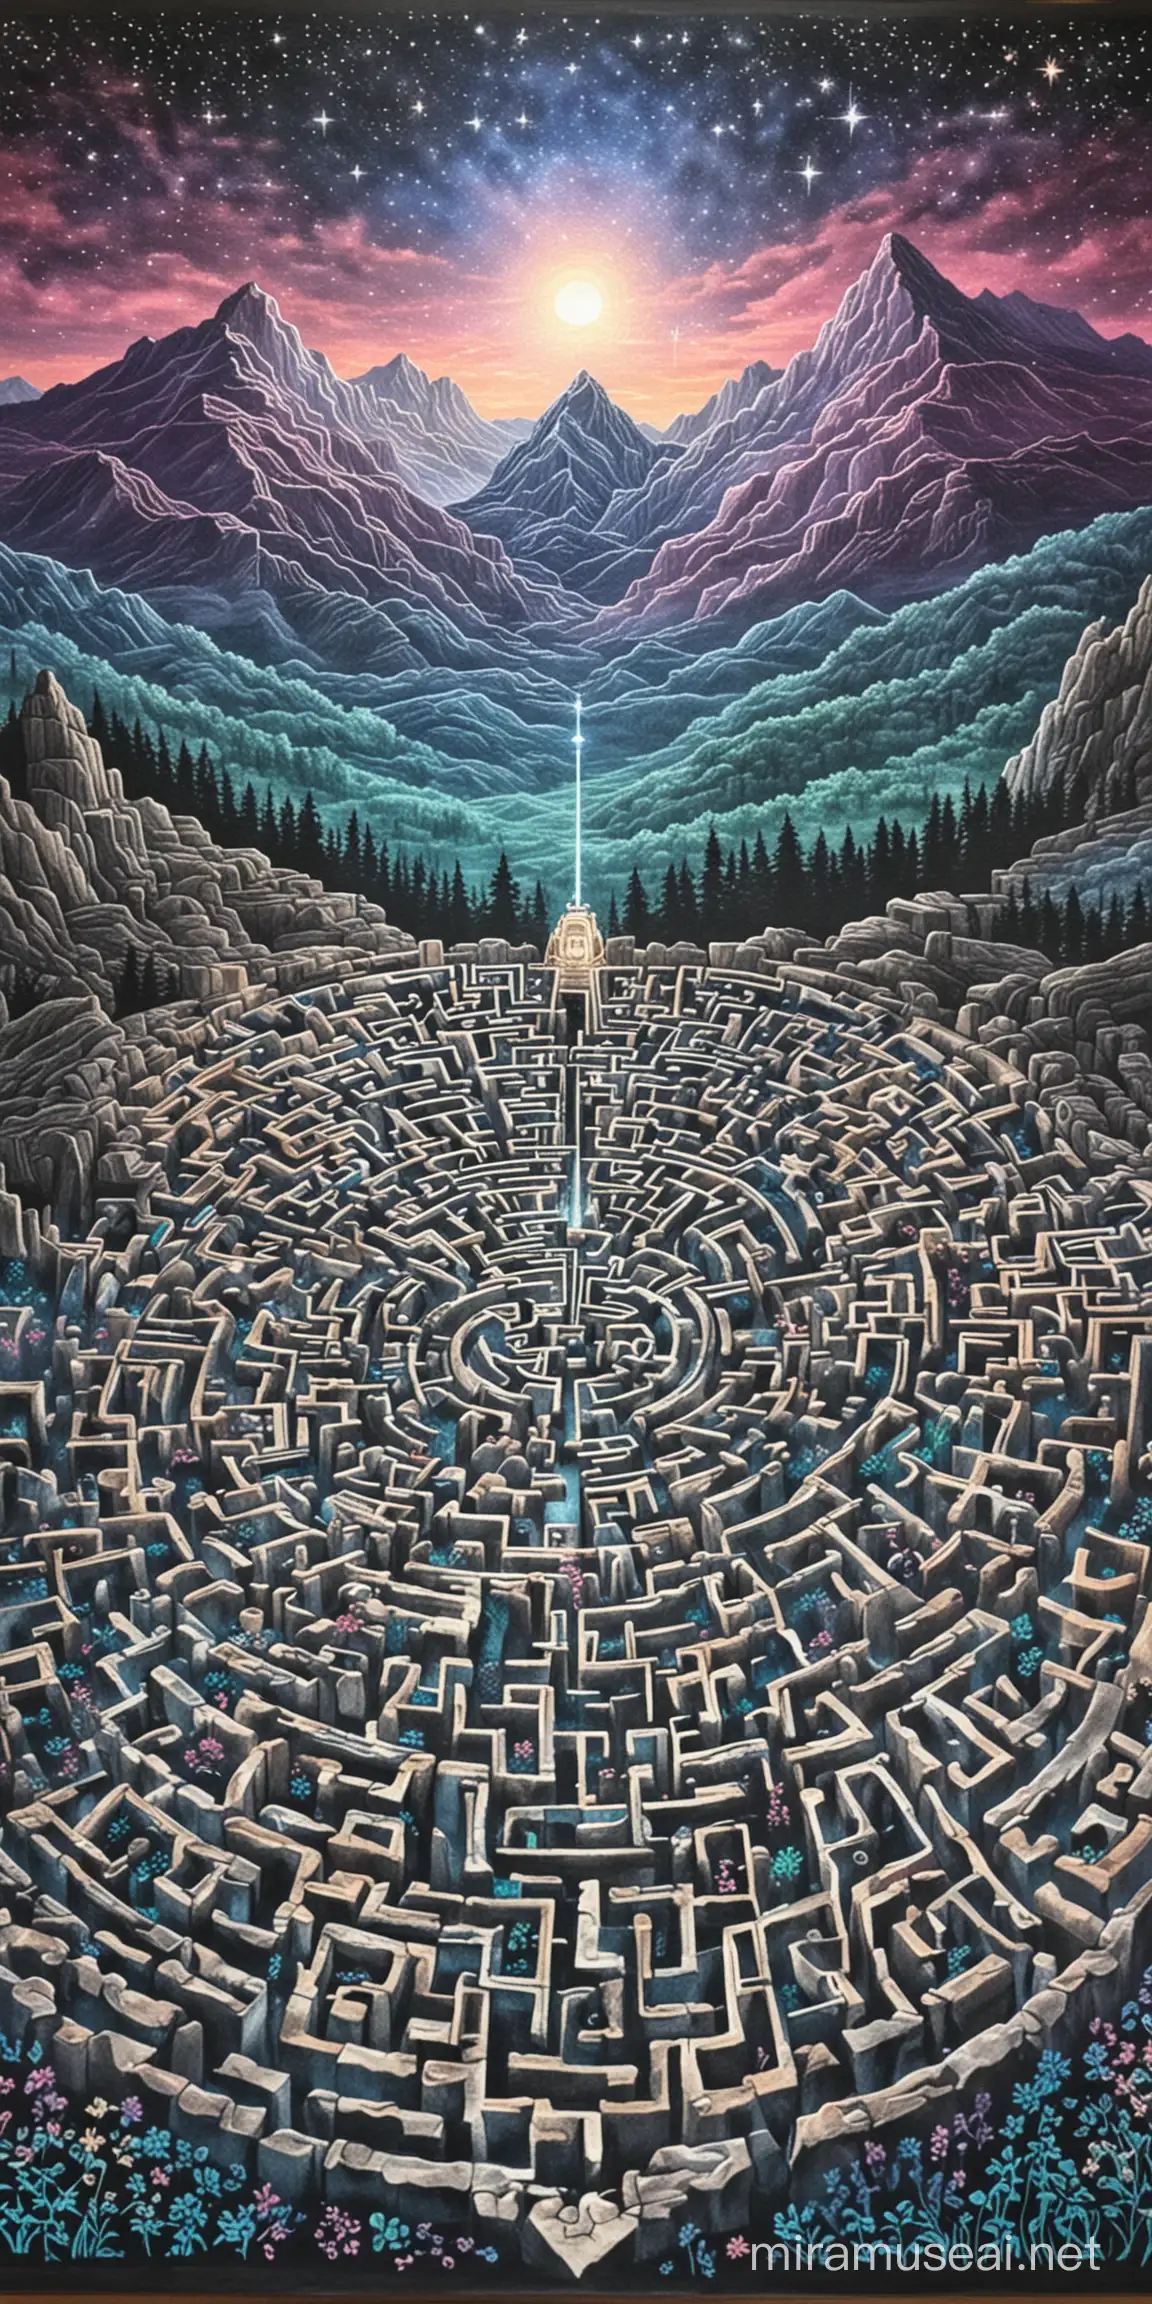 labyrinthe géant dessin aux pastels image décors cartes art divinatoire art pastels montagne en fond ciel de nuit étoiles brillantes